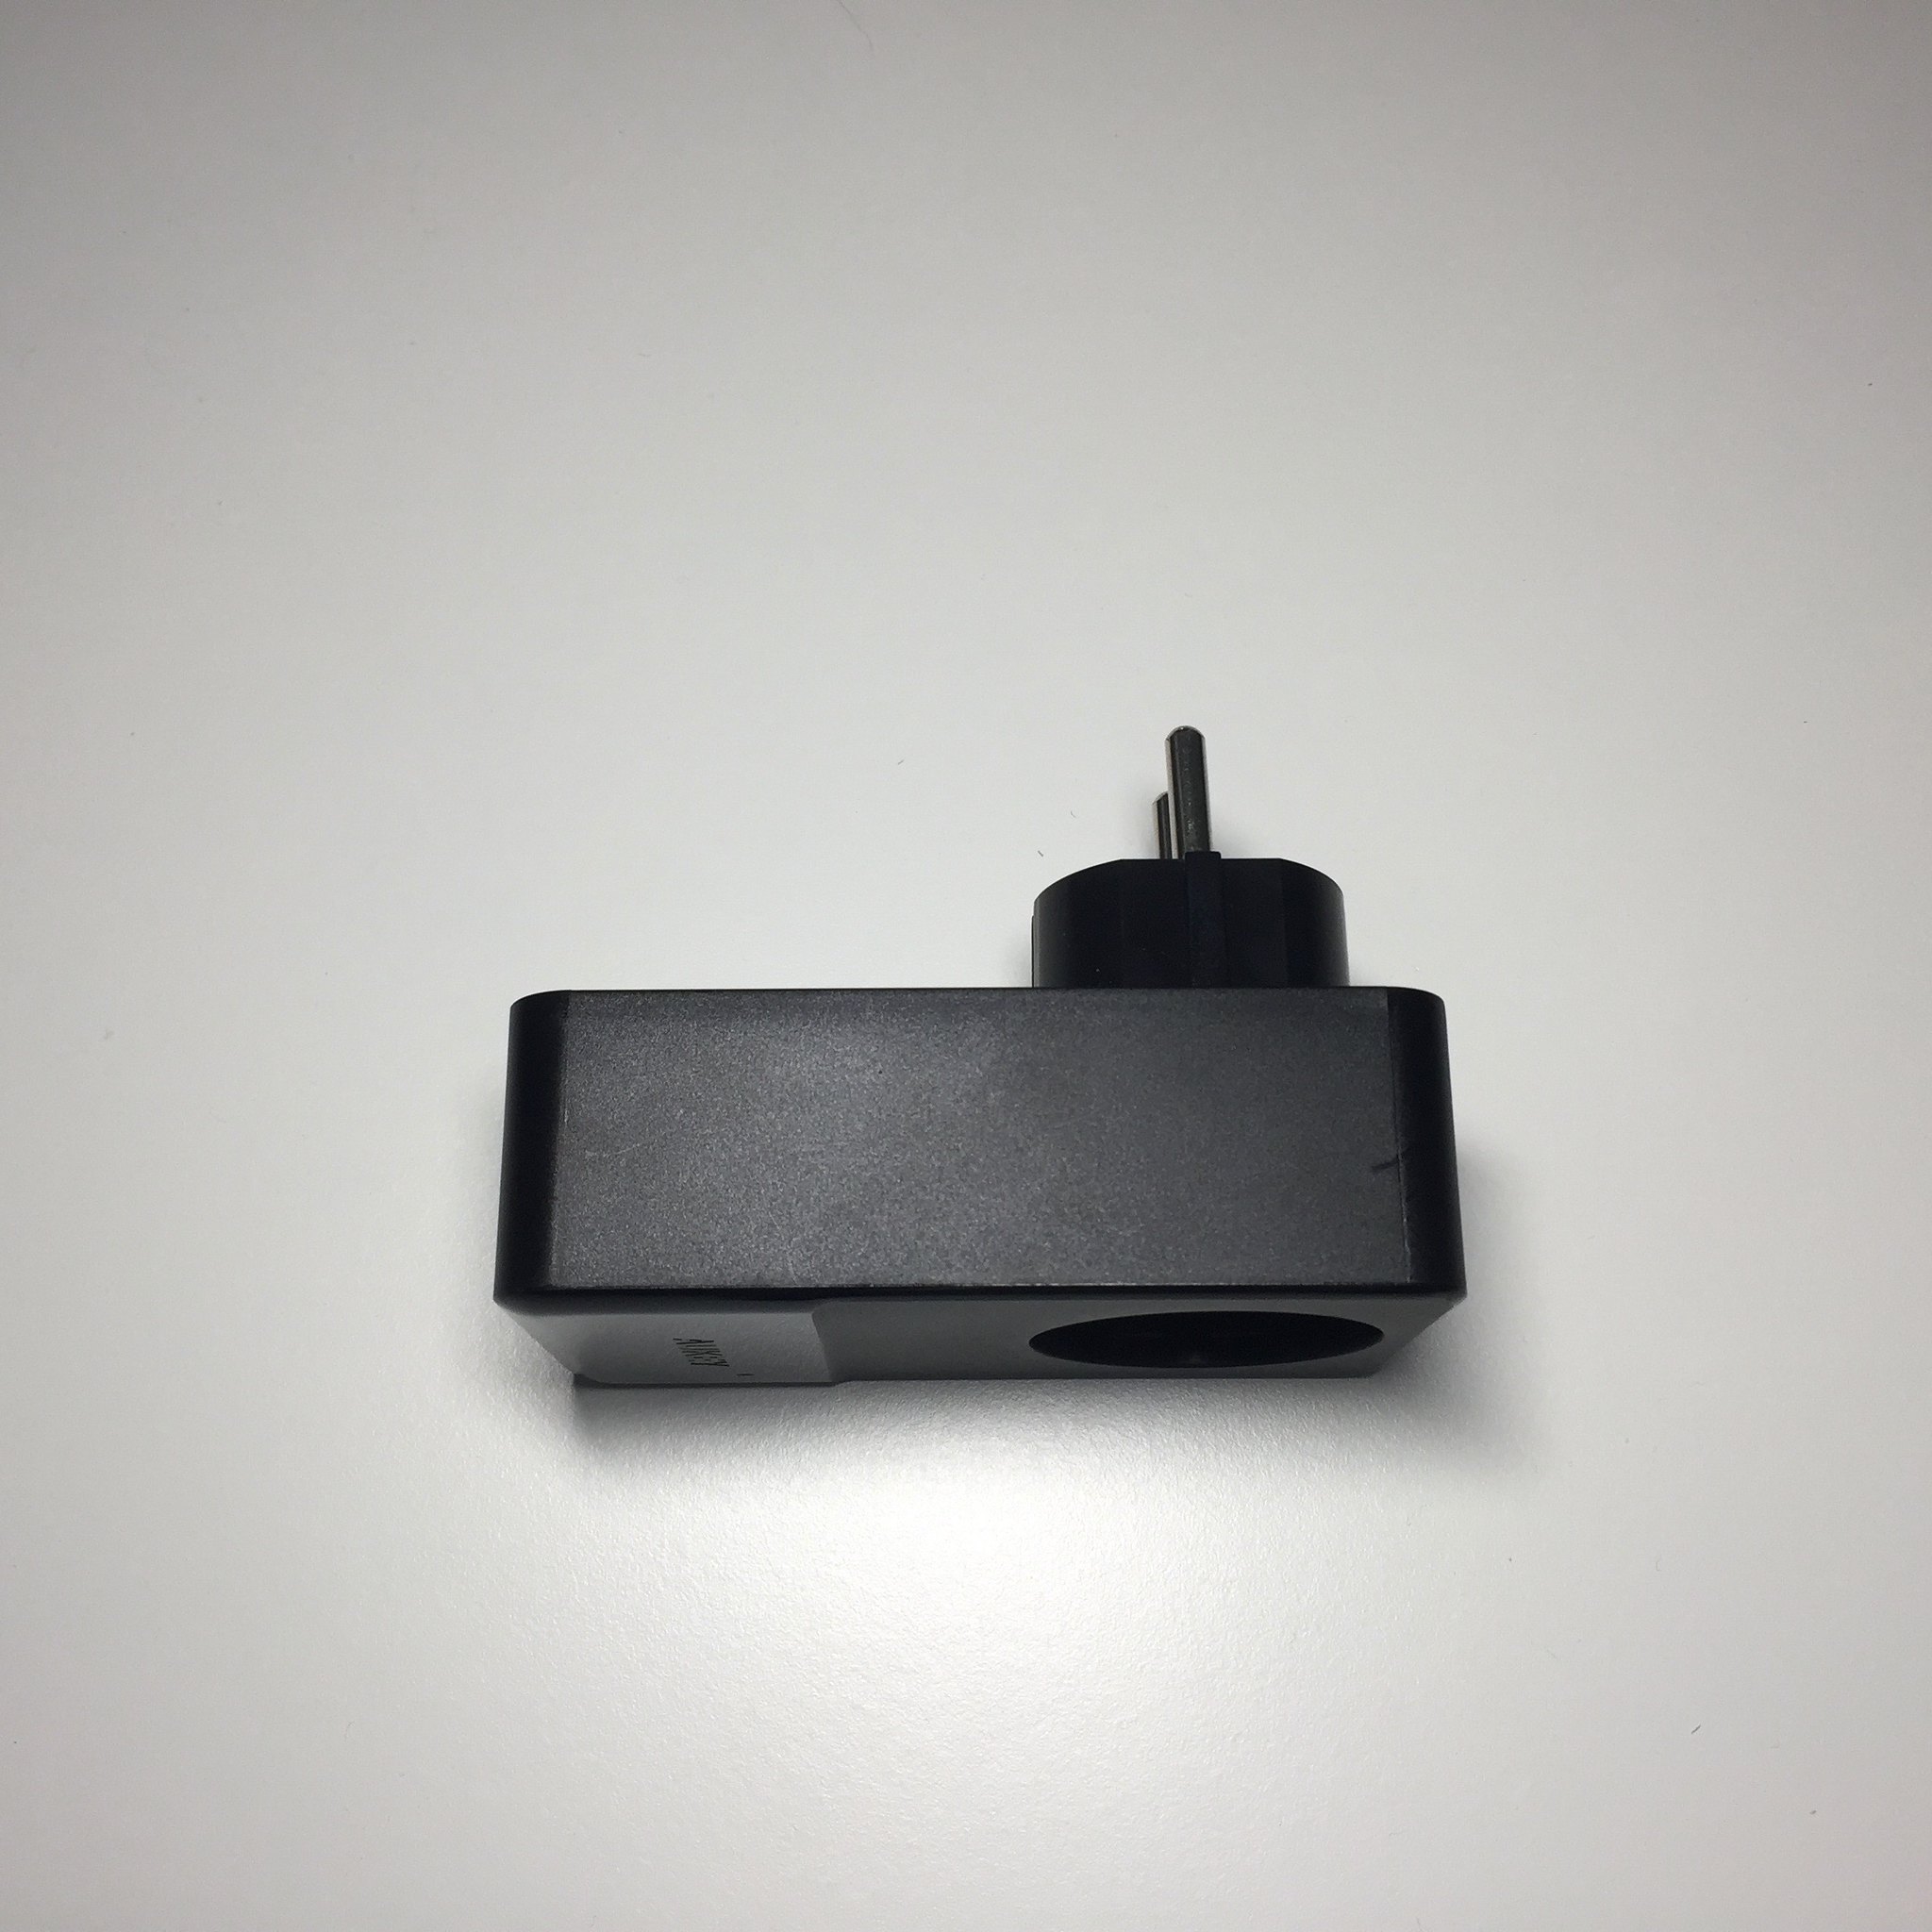 20170505 Test du chargeur AUKEY 4 ports USB et une prise secteur (PA-S12) 4